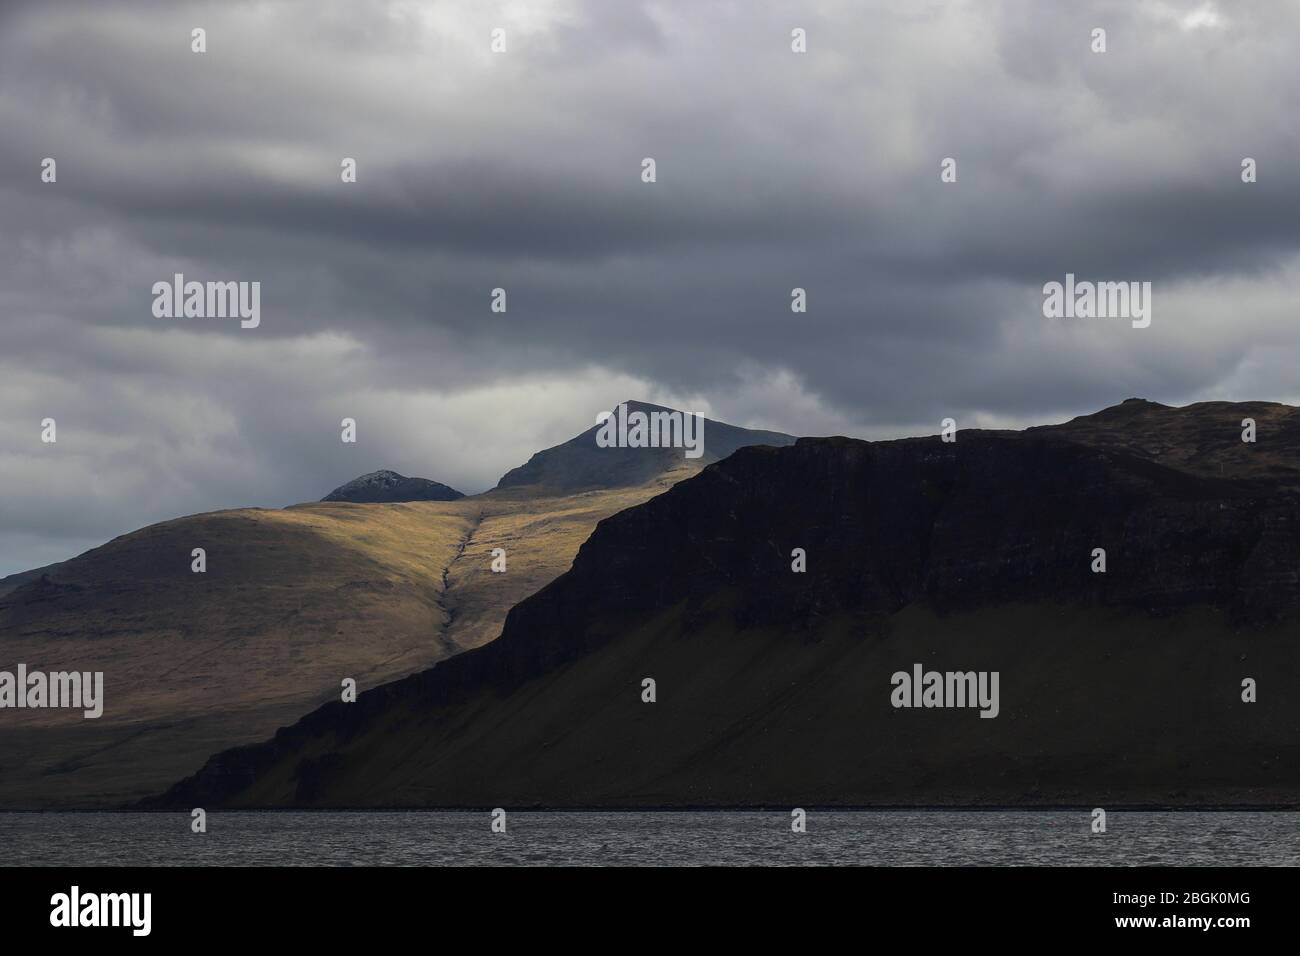 Blick auf Ben More, Isle of Mull, Schottland vom Loch Na Keal an einem stürmischen Tag, Wolken über dem Kopf. Sonnenfleck hinter dunklen Dunan Na Nighthean Klippen. Stockfoto